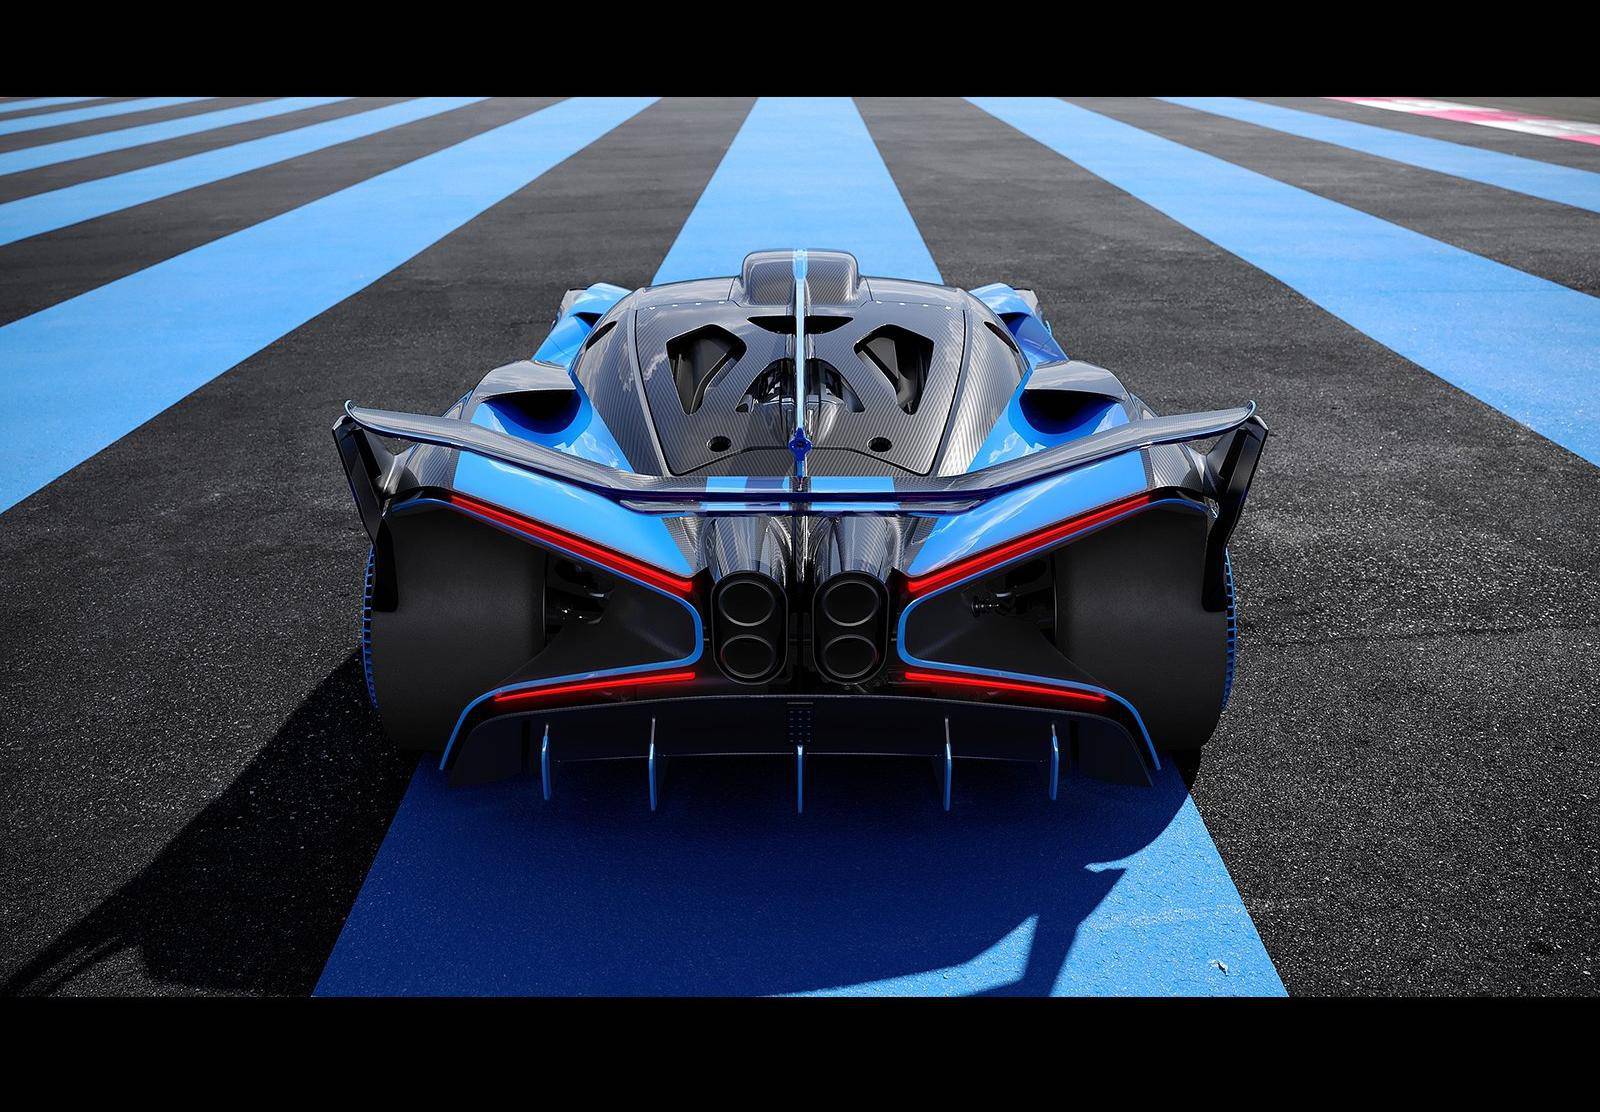 Nevjerojatni Bugatti Bolide s 1850 KS je brži i od Formule 1